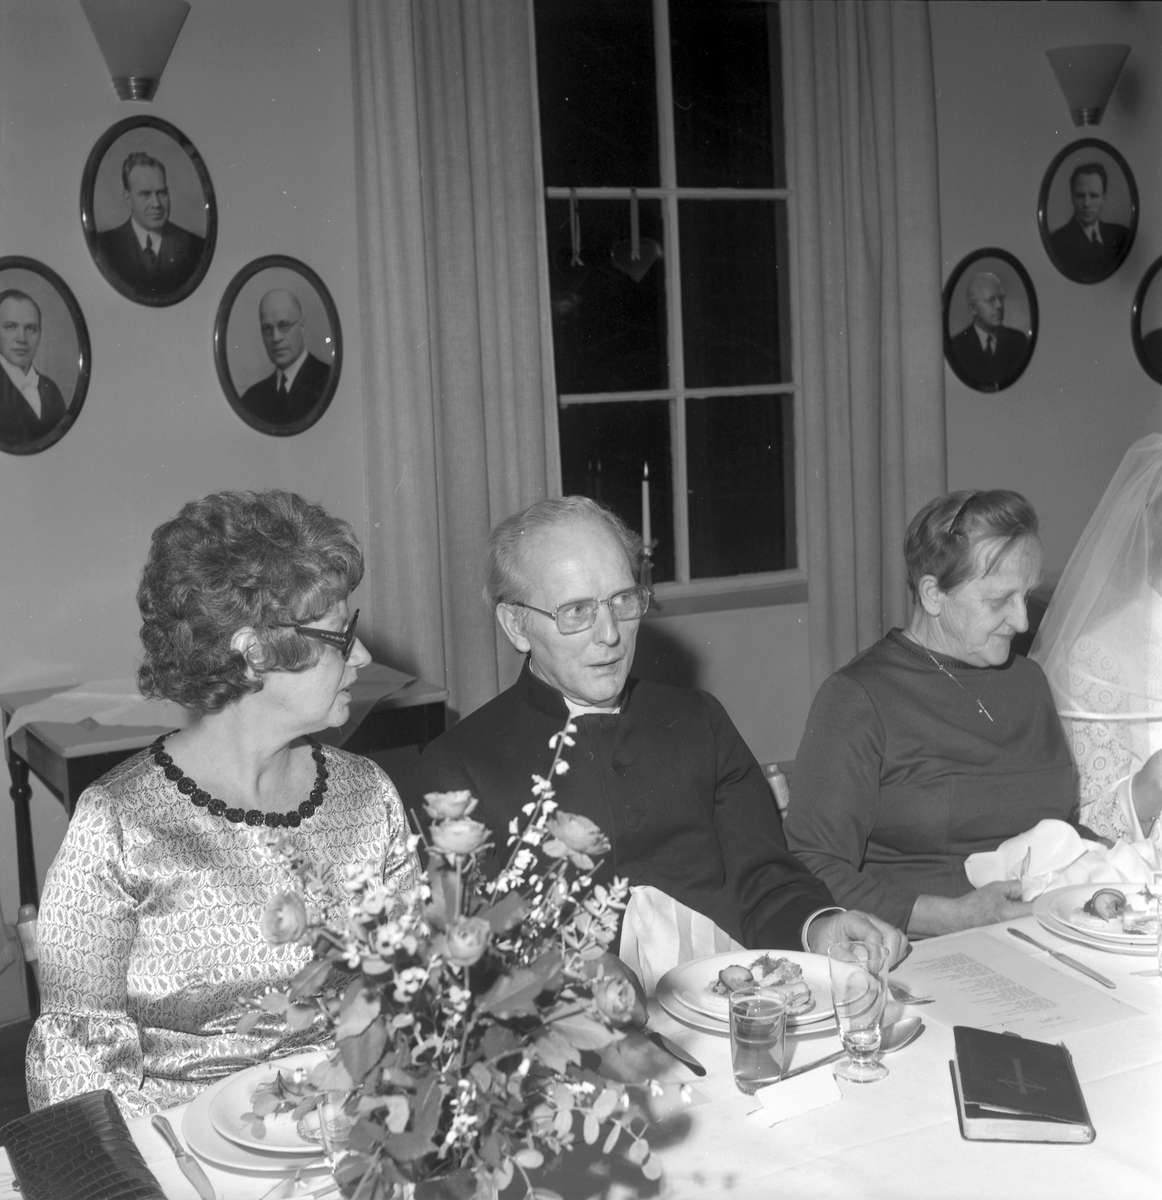 Alvenhags bröllop med bröllopsfest. Den 29 december 1972

